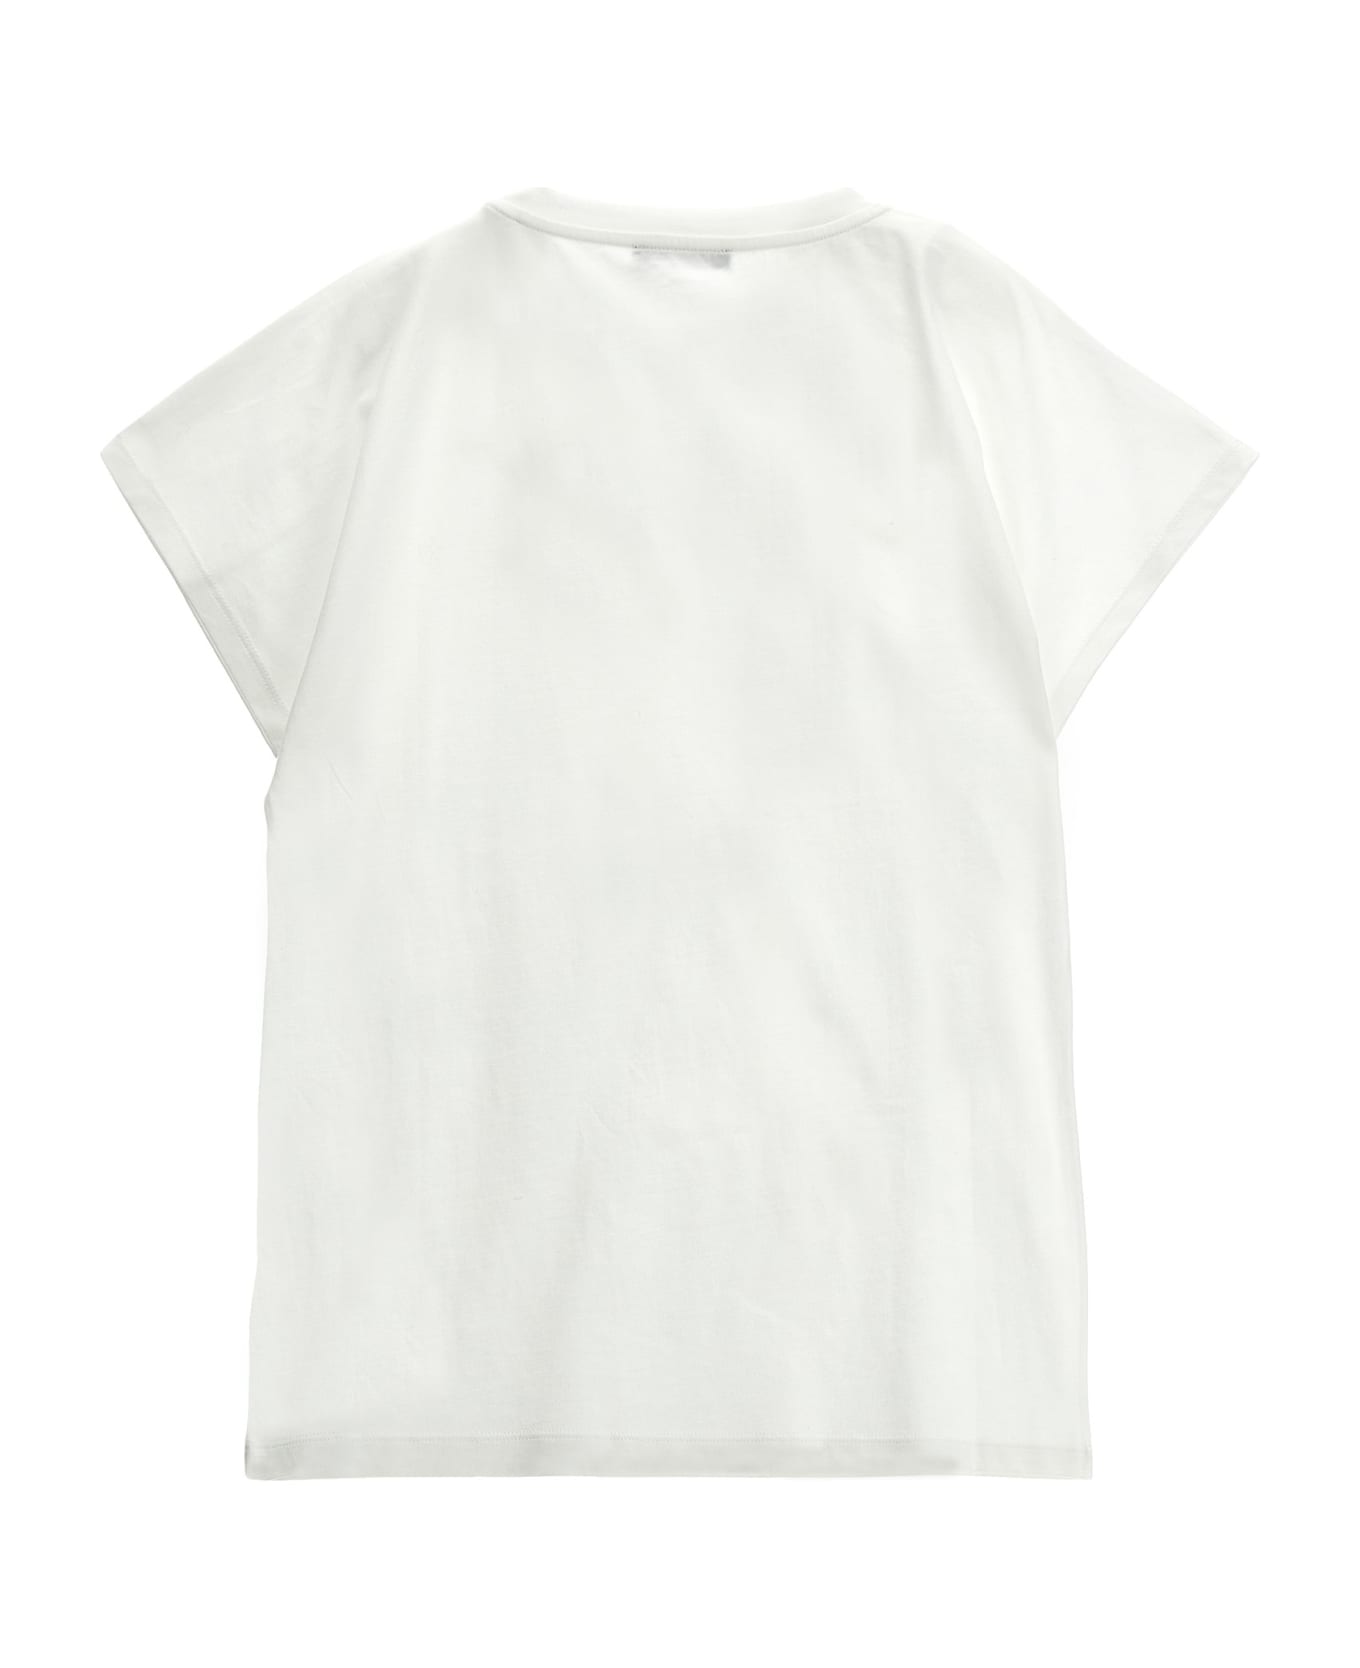 Balmain Rhinestone Logo T-shirt - White